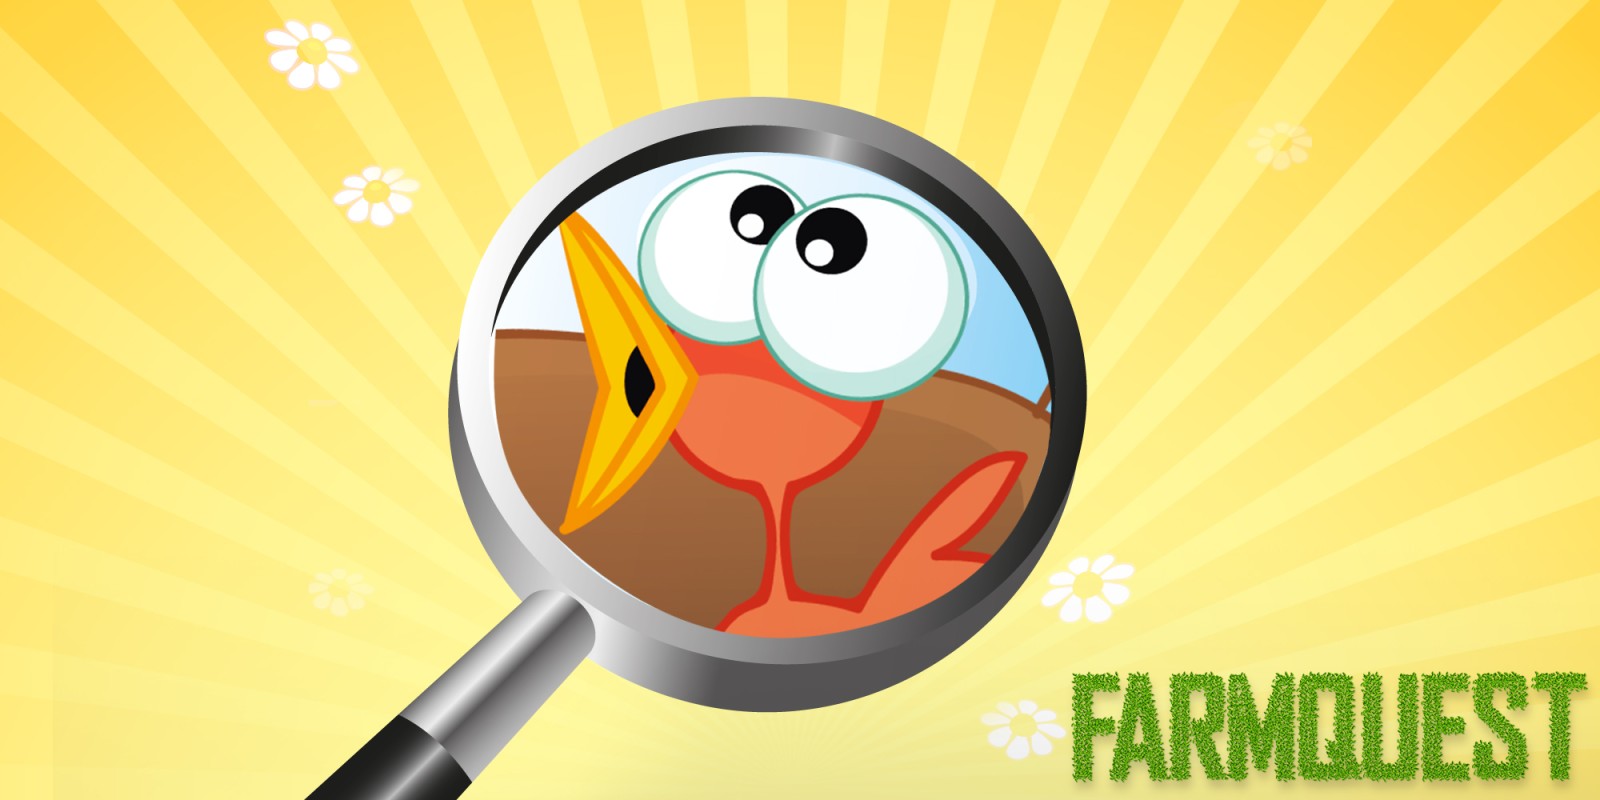 Farmquest - Il gioco di ricerca di oggetti nascosti per bambini